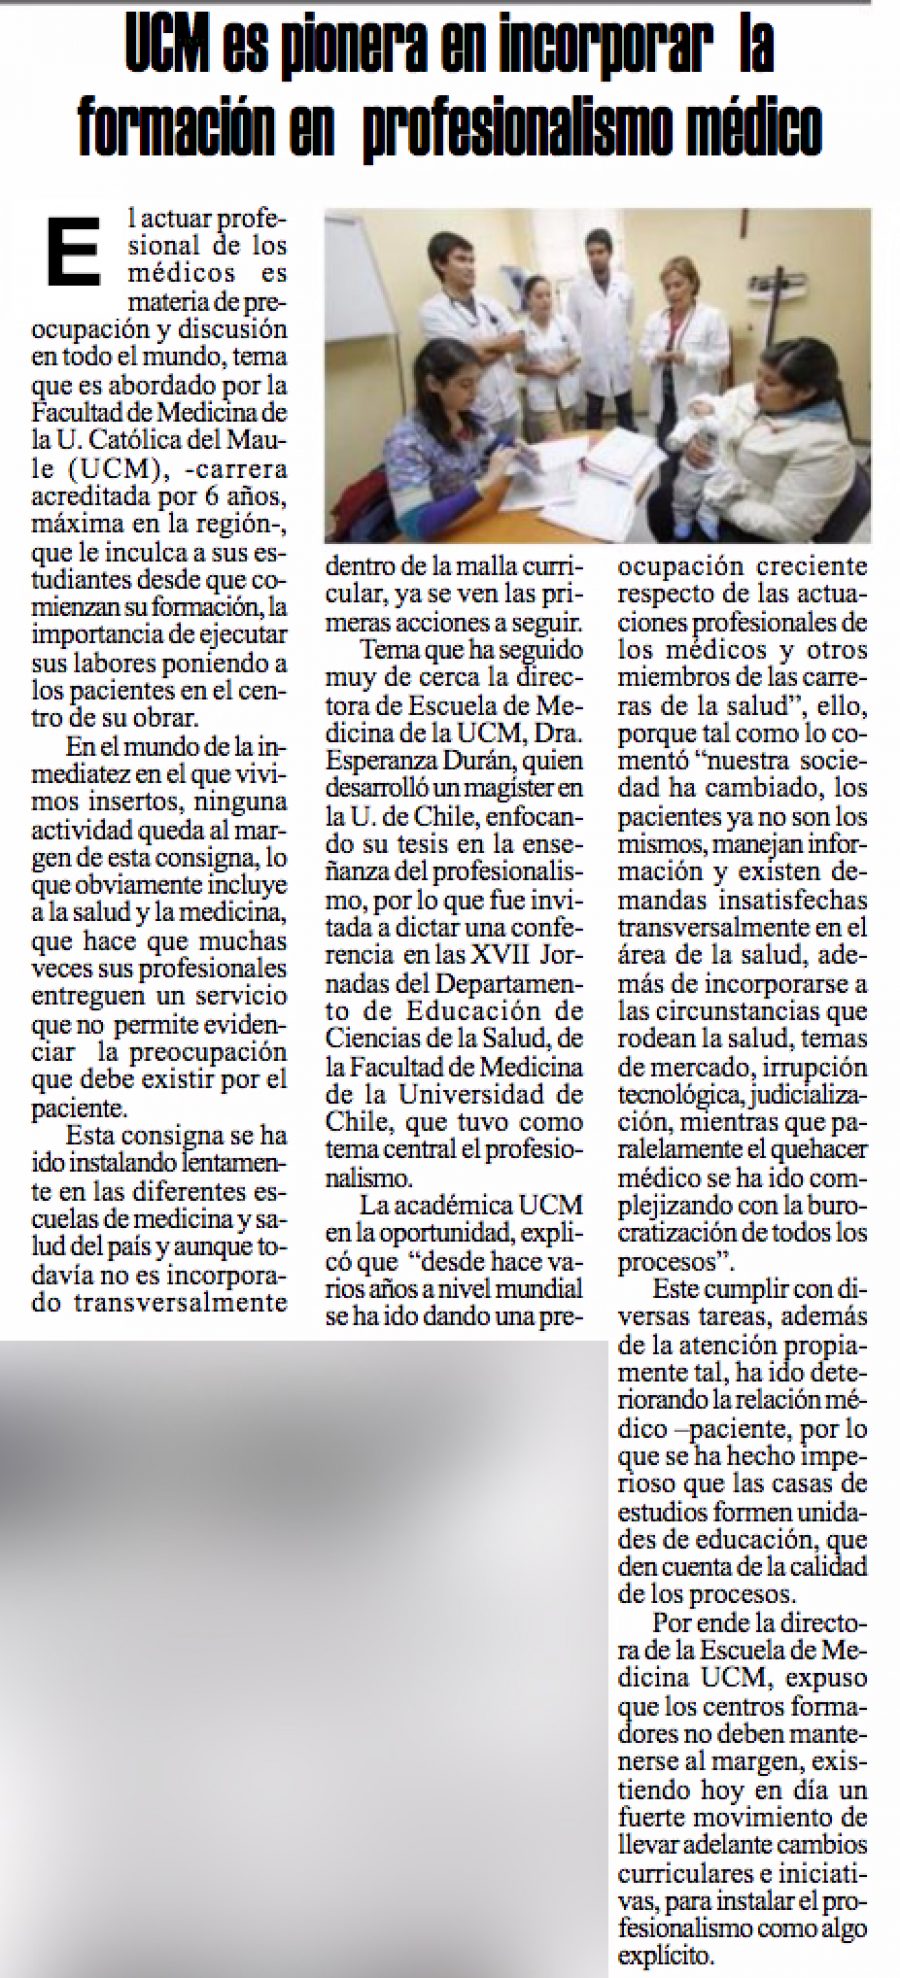 31 en Diario El Heraldo: “UCM es pionera en incorporar la formación de profesionalismo médico”